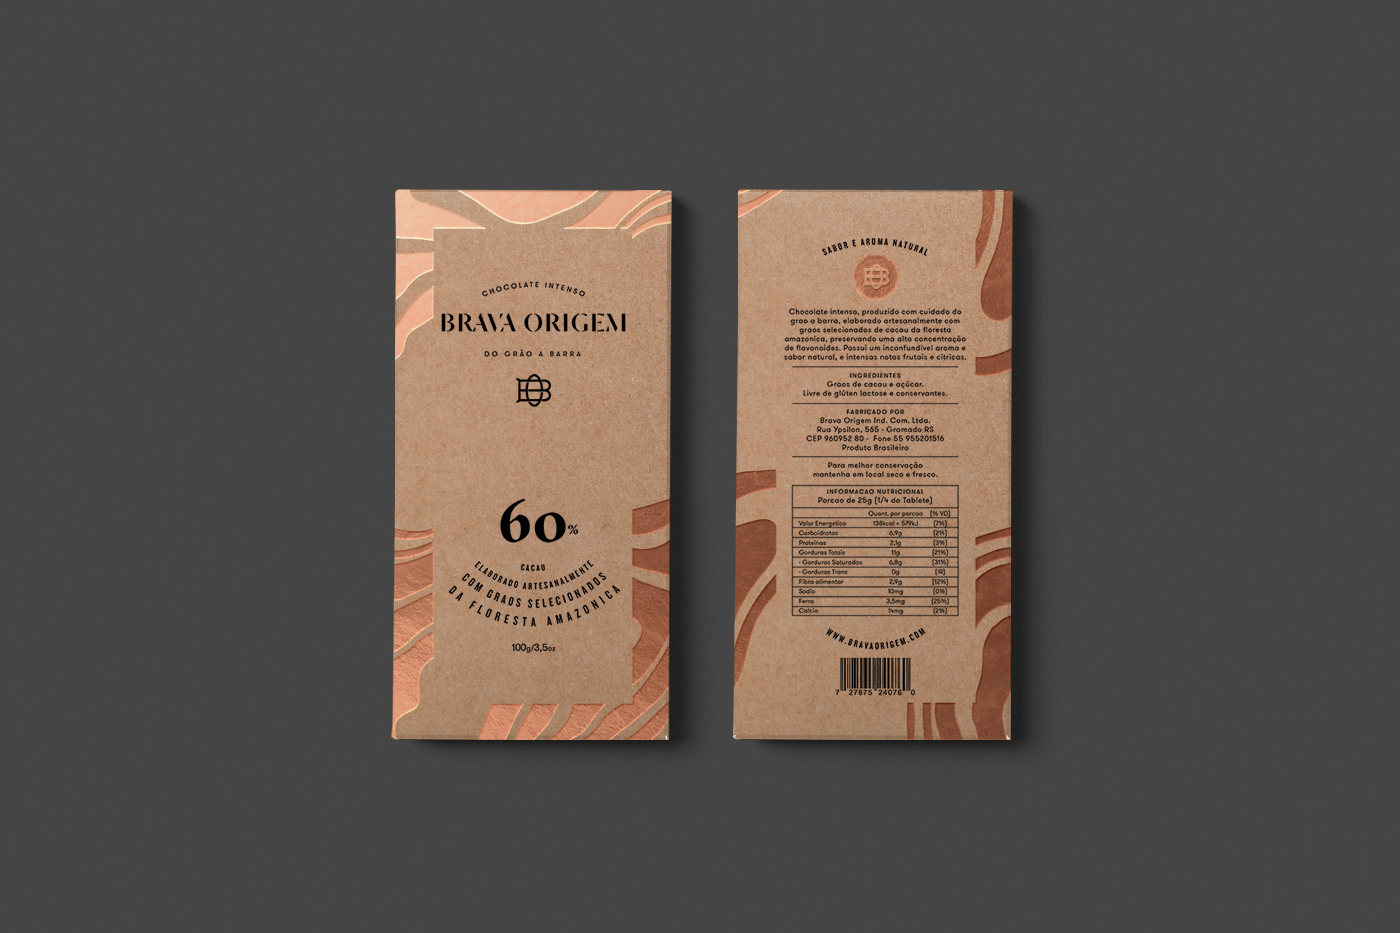  布拉瓦Origem巧克力品牌设计